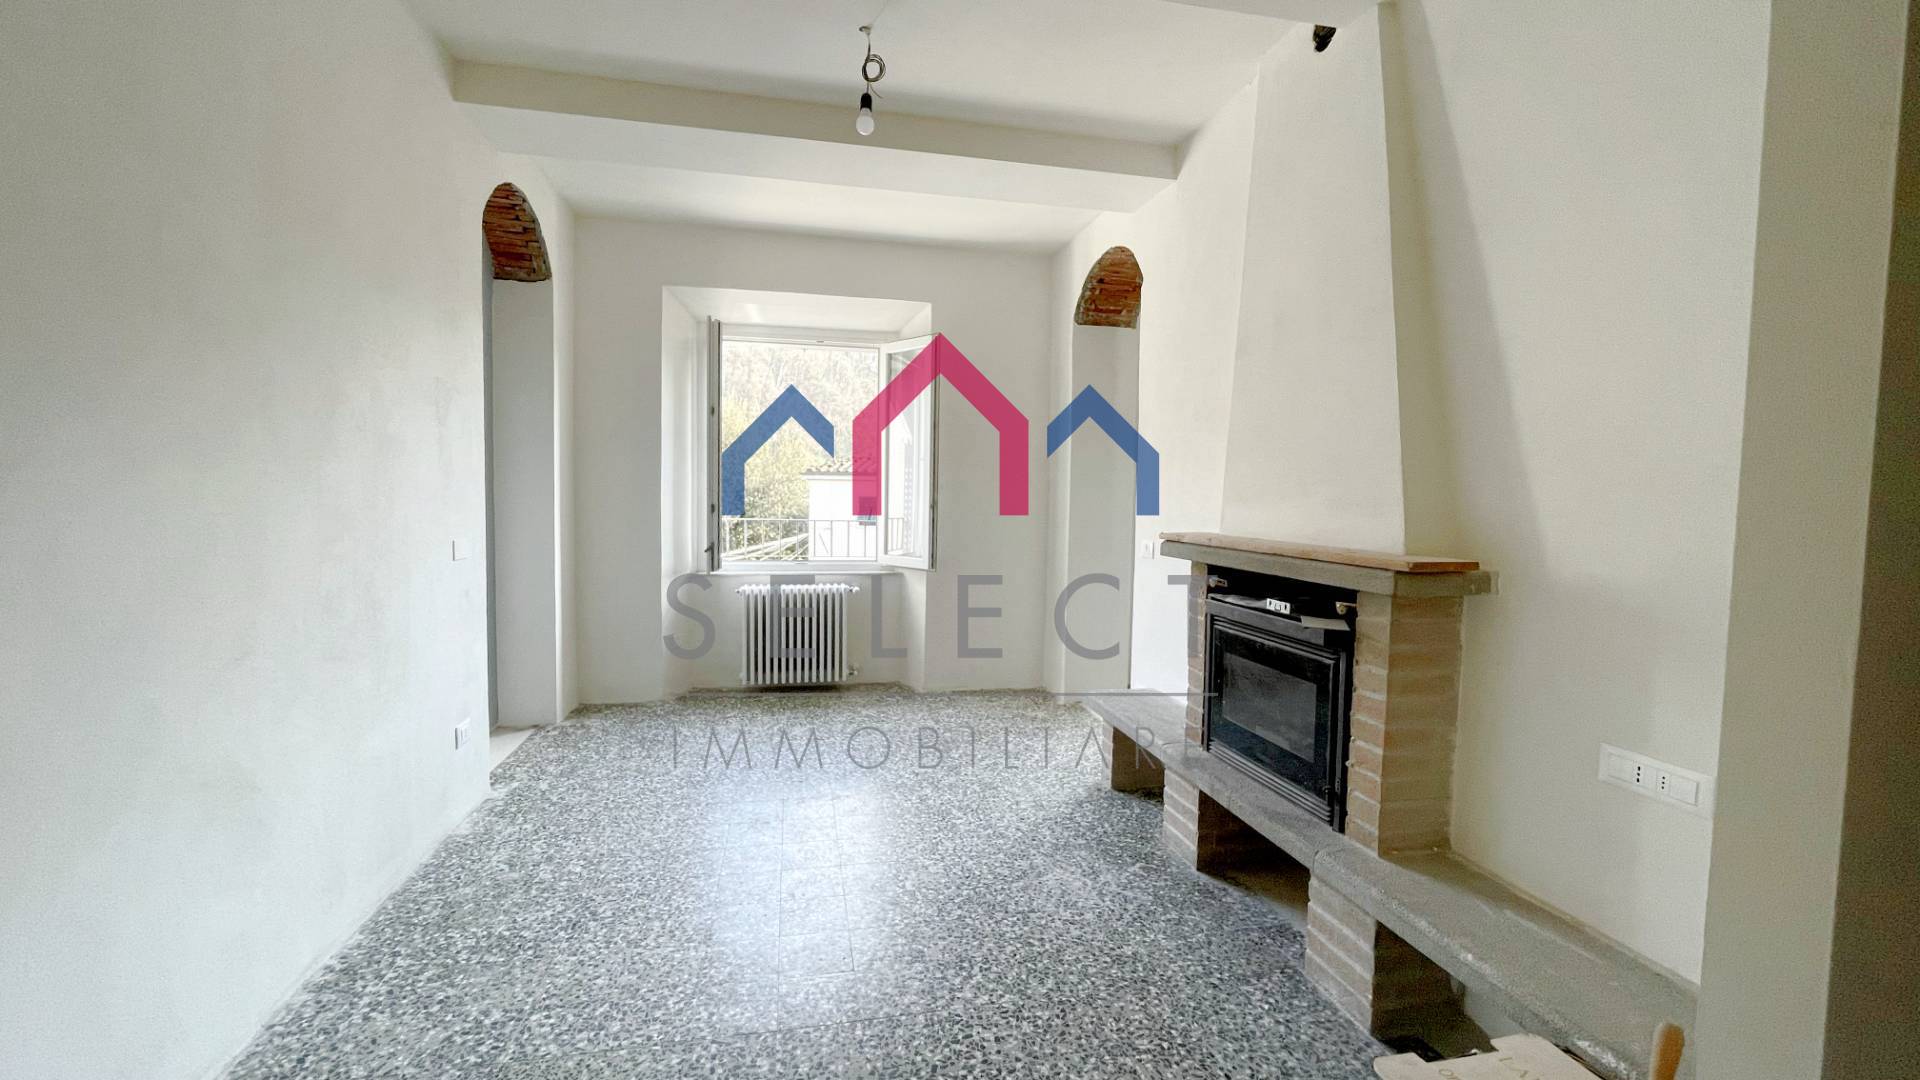 Appartamento in vendita a Bagni di Lucca, 5 locali, zona oli, prezzo € 150.000 | PortaleAgenzieImmobiliari.it